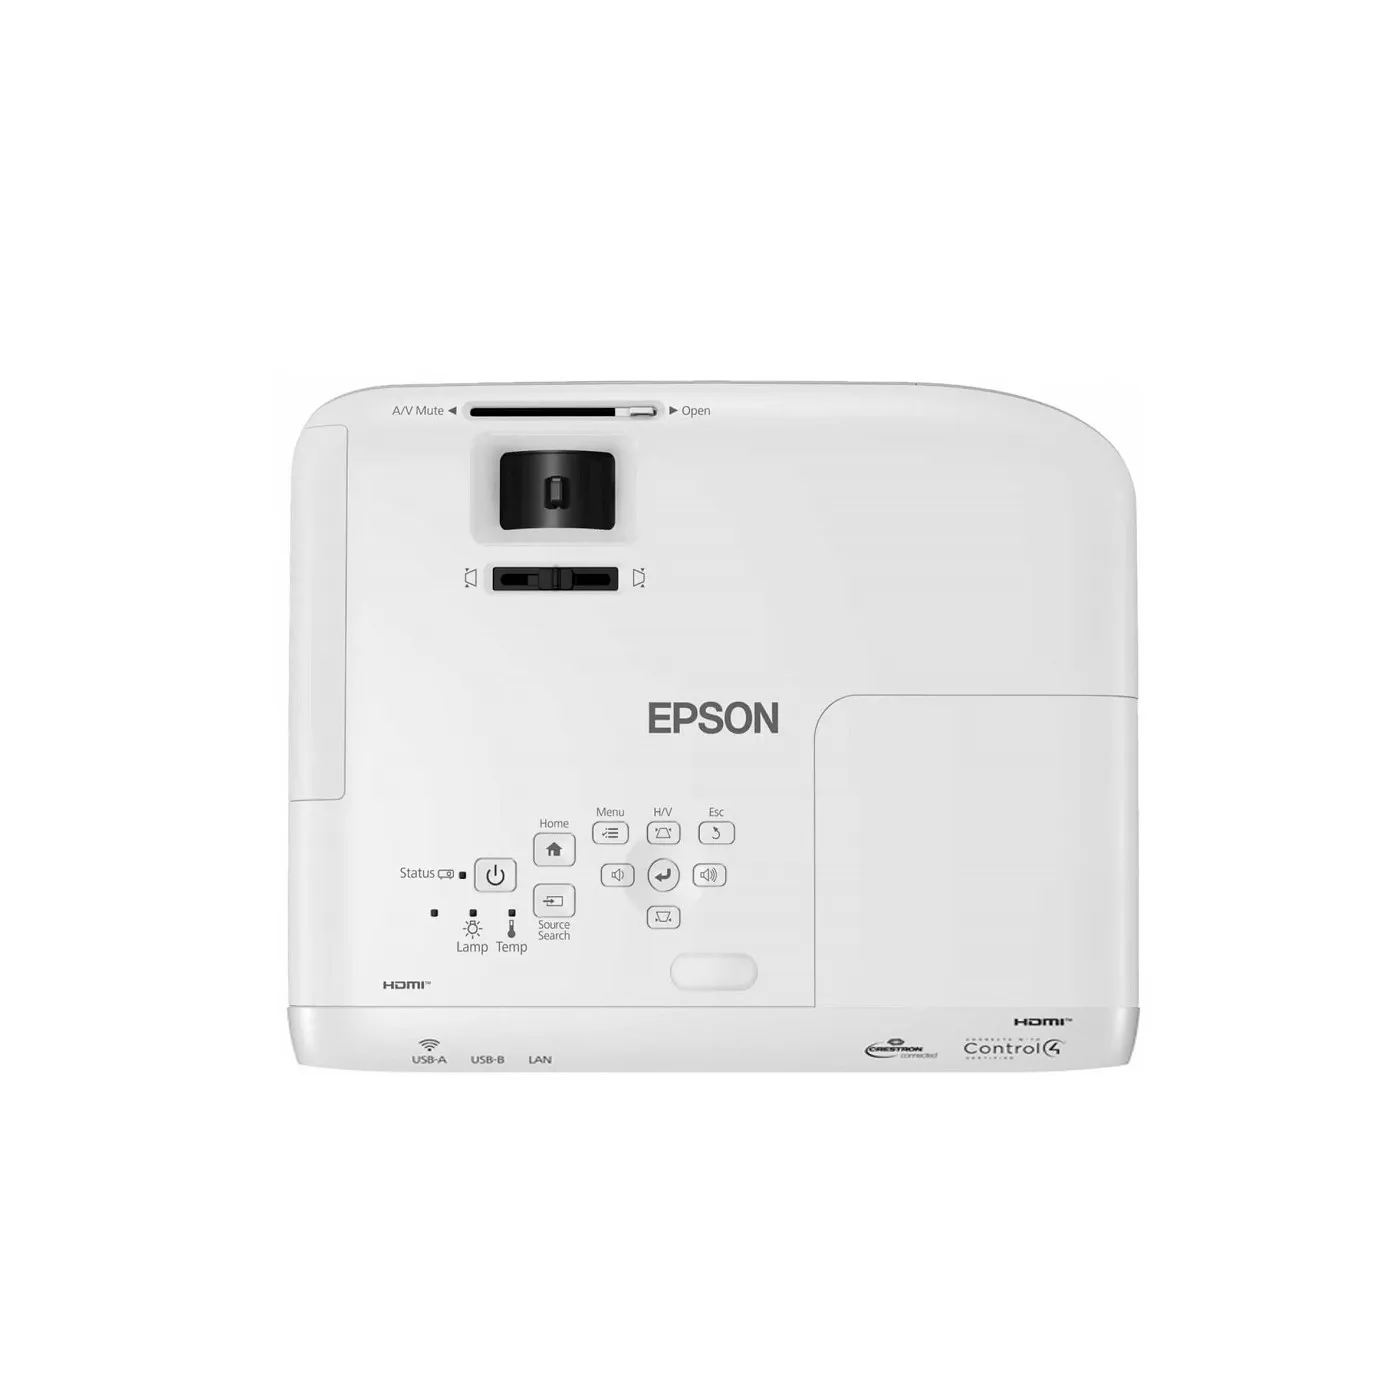 Videoproyector EPSON W49 WXGA Blanco